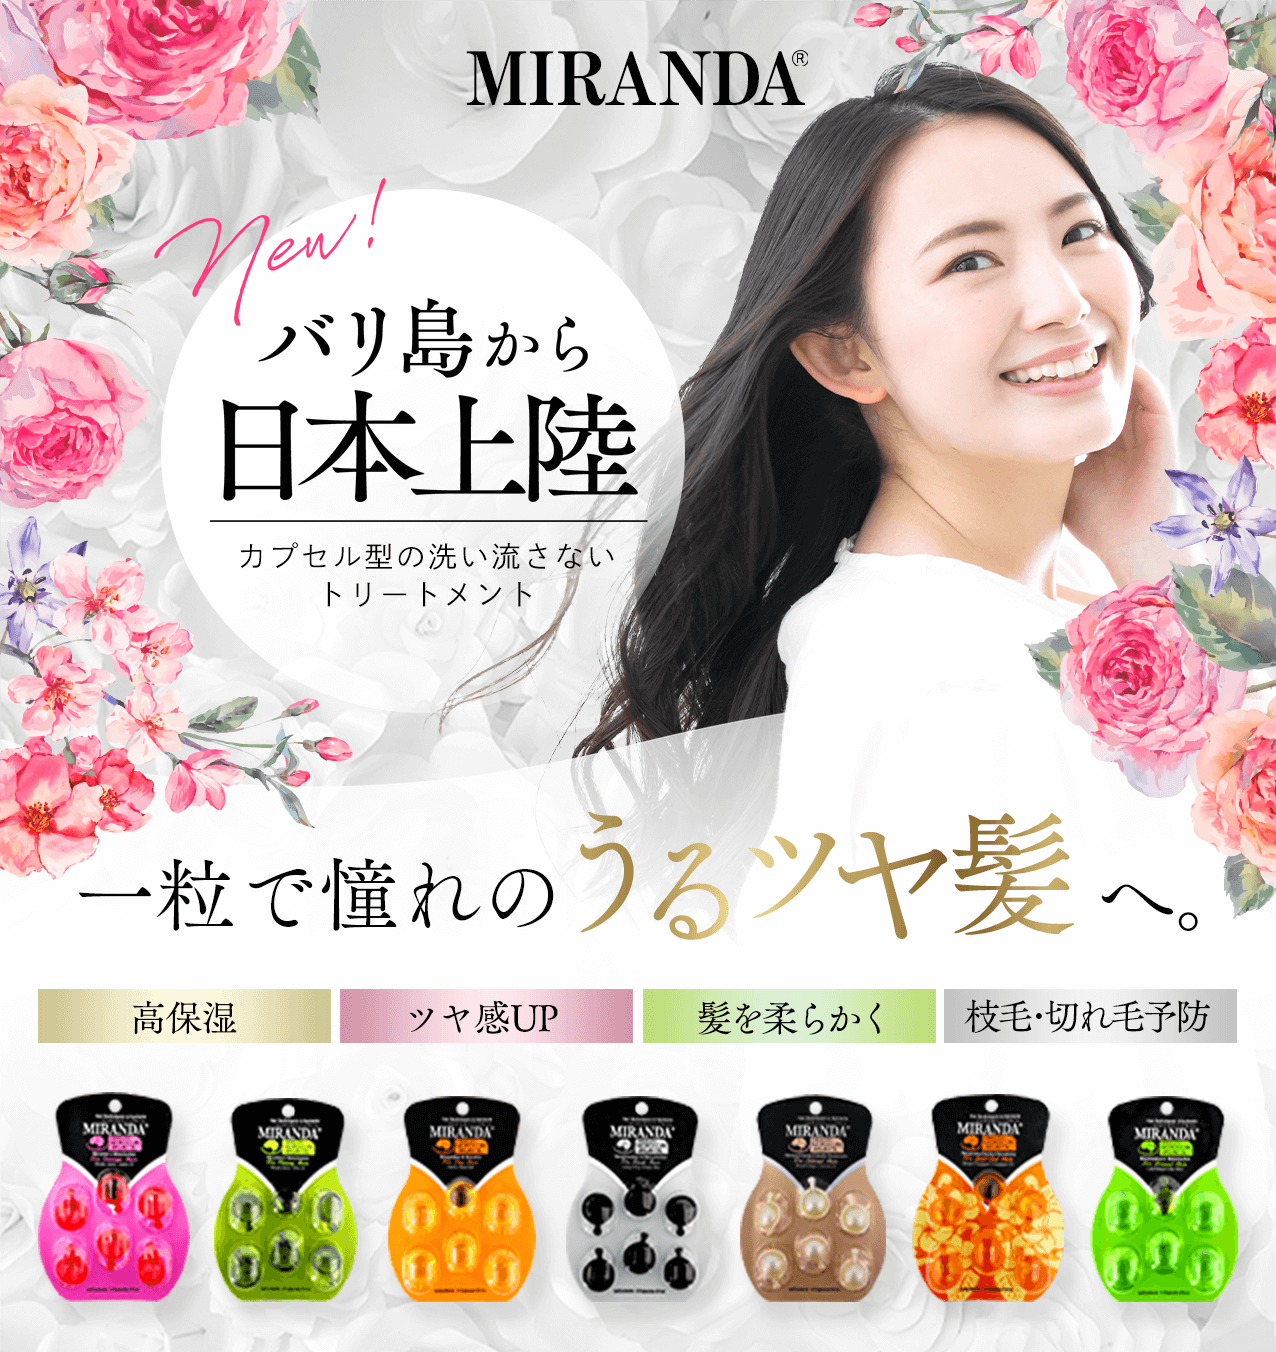 タメせる！Herborist Japan「MIRANDA（ミランダ）ヘアオイル 7種」